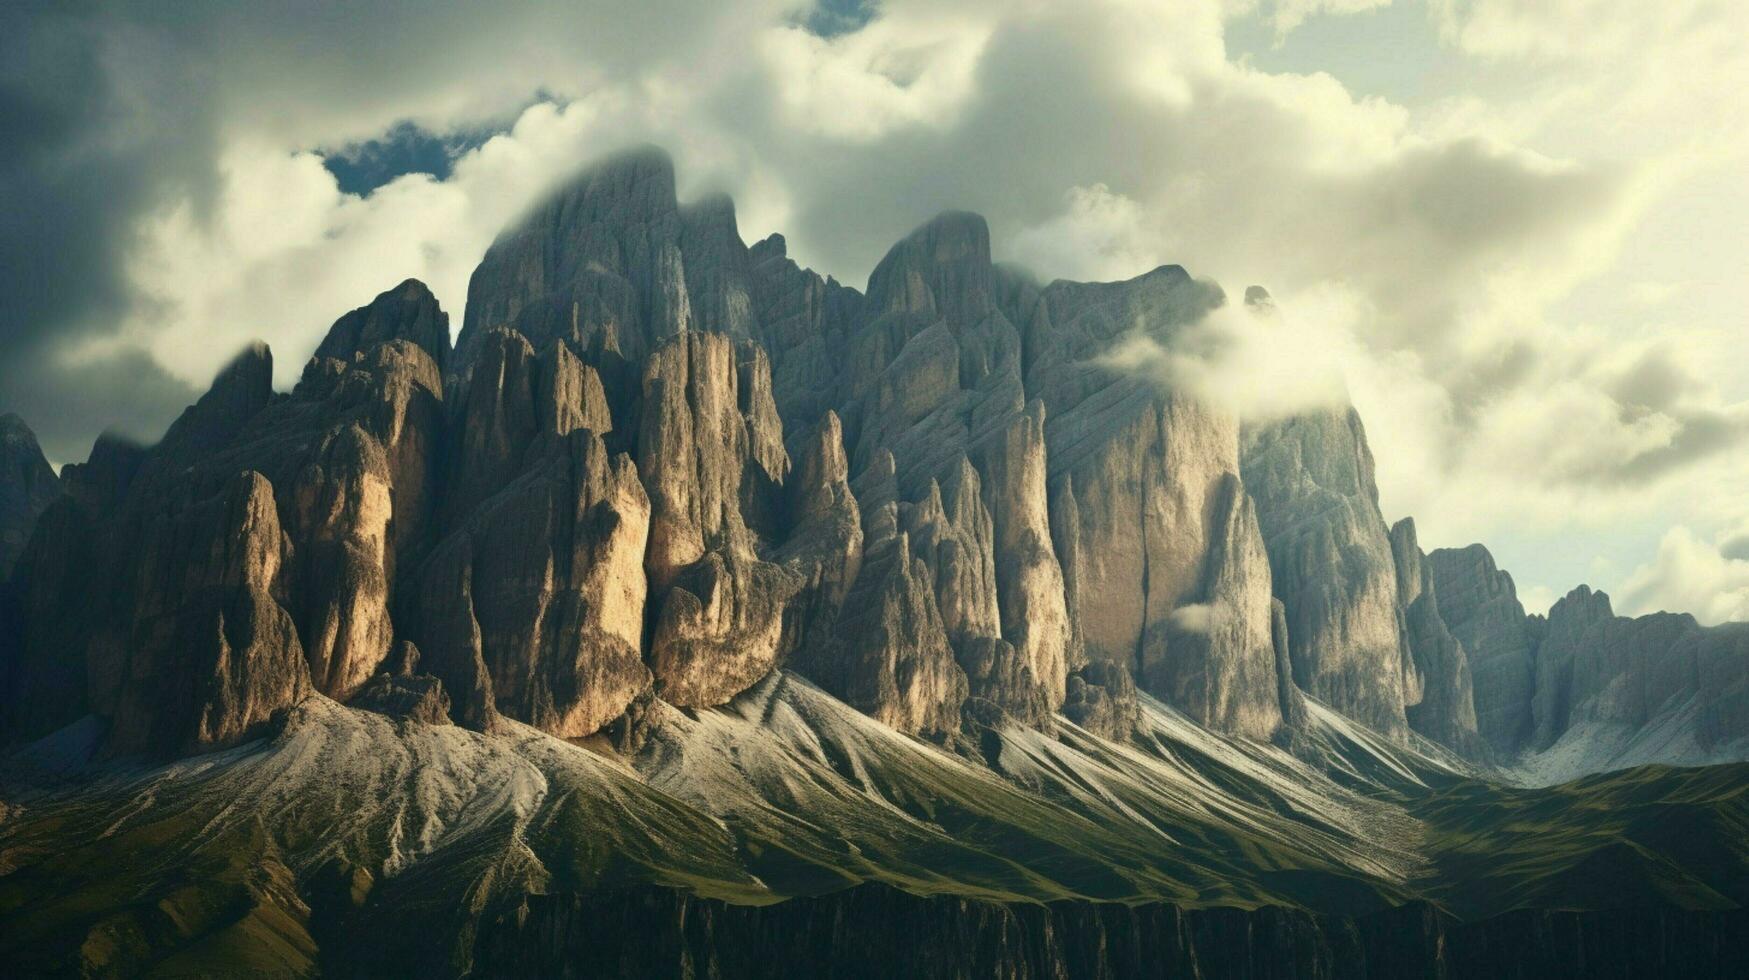 dolomieten gedekt bergen van Italië groep di se foto